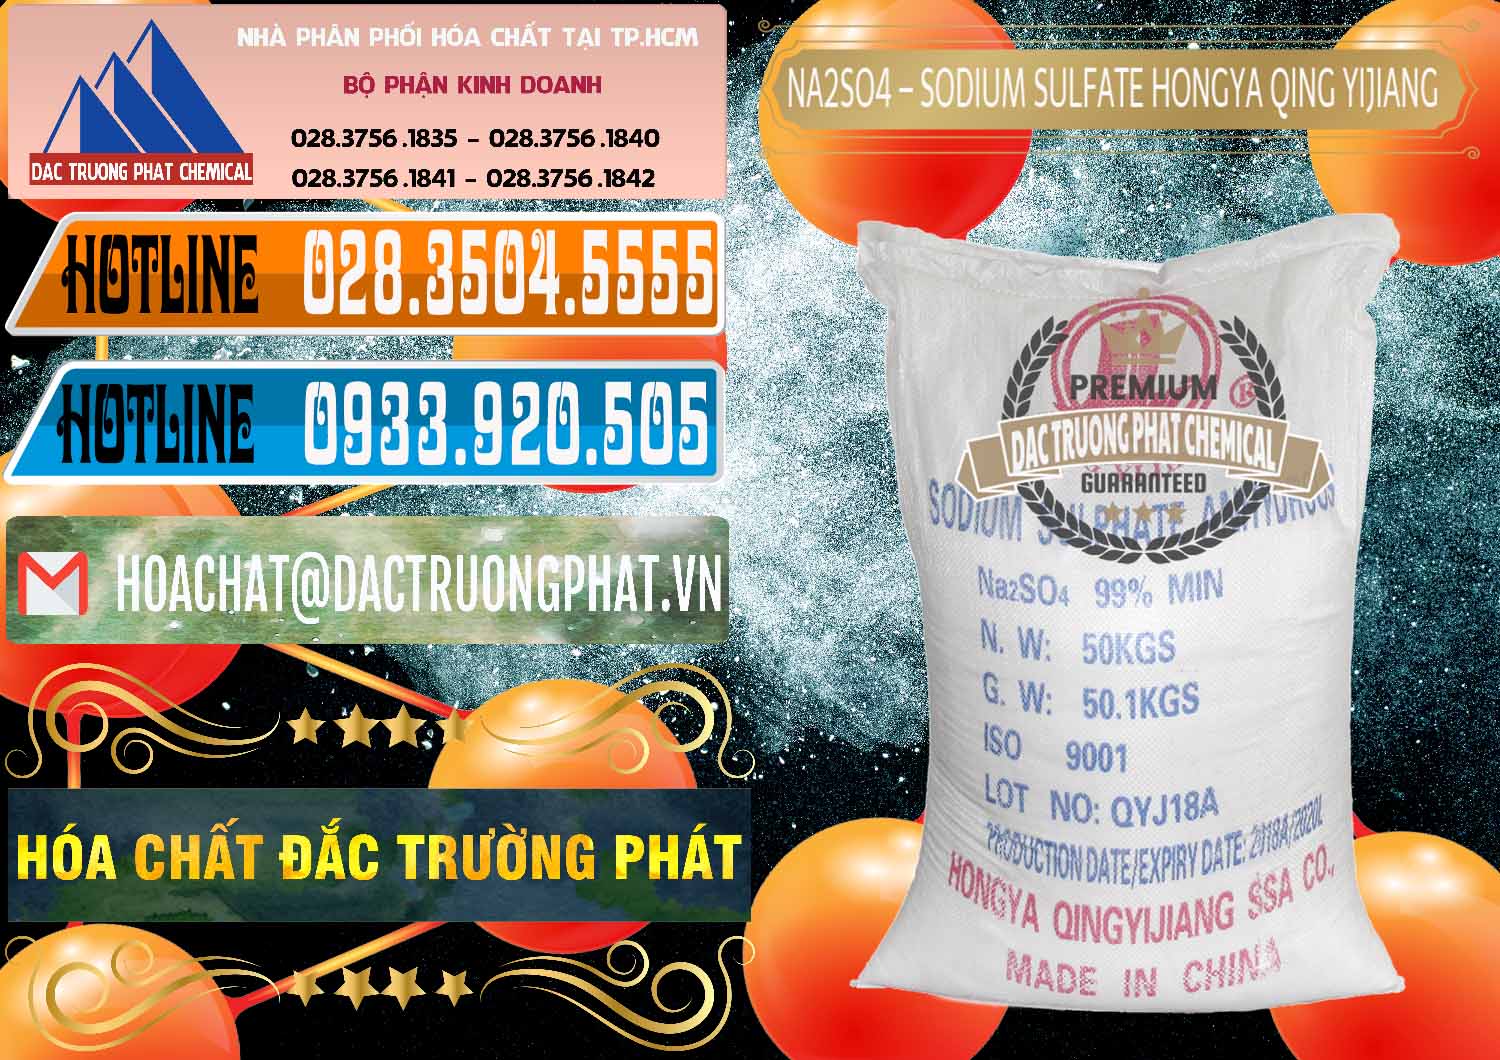 Chuyên cung ứng & bán Sodium Sulphate - Muối Sunfat Na2SO4 Logo Cánh Bườm Hongya Qing Yi Trung Quốc China - 0098 - Nhà cung ứng ( phân phối ) hóa chất tại TP.HCM - stmp.net